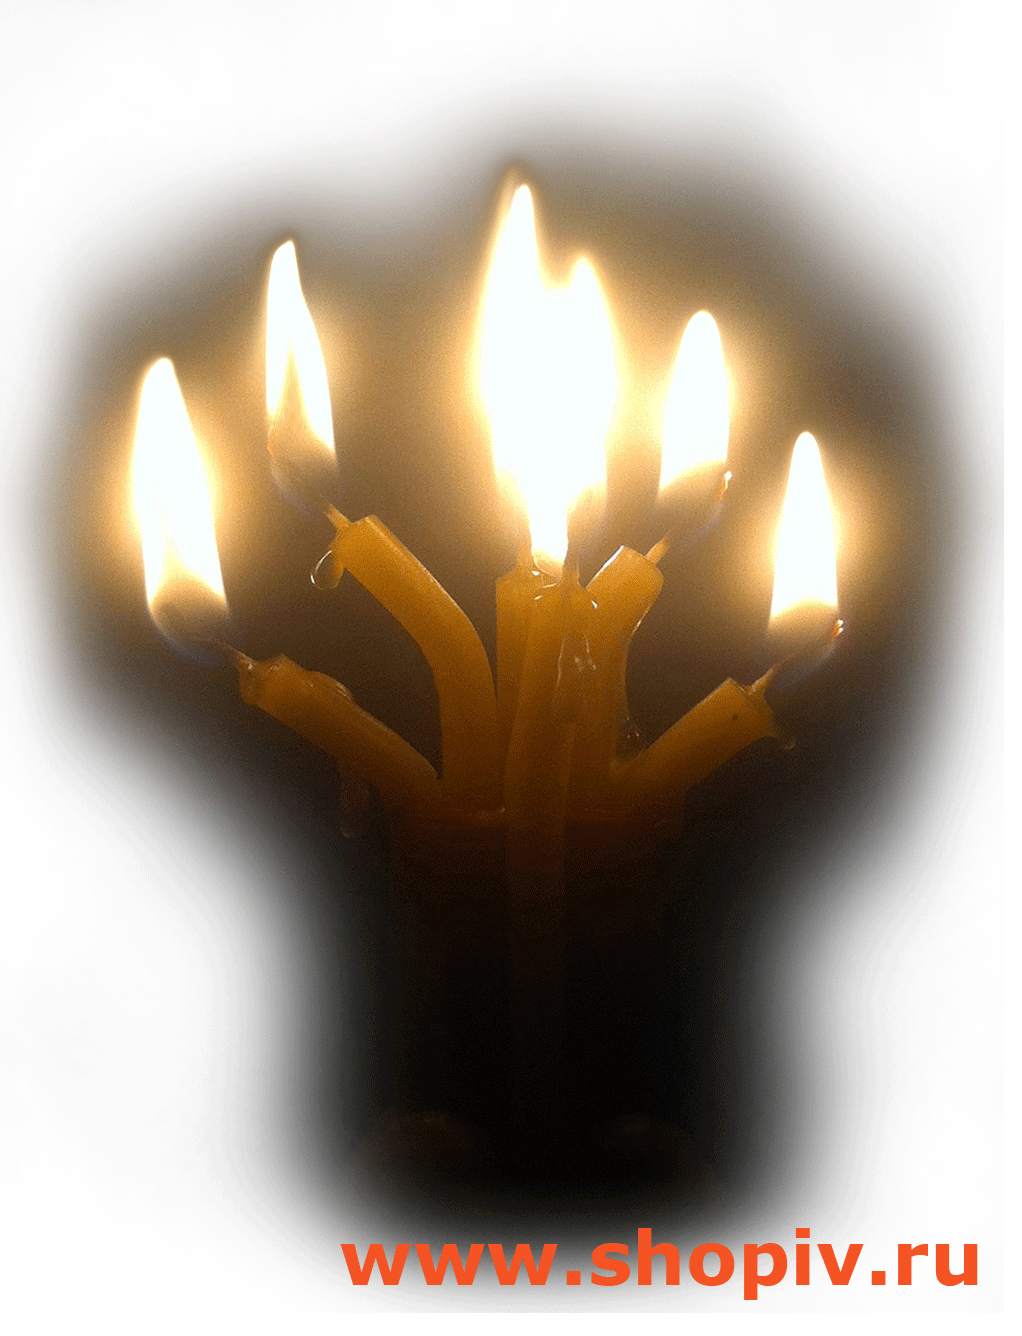 Плетёные свечи  Dostoinstvo